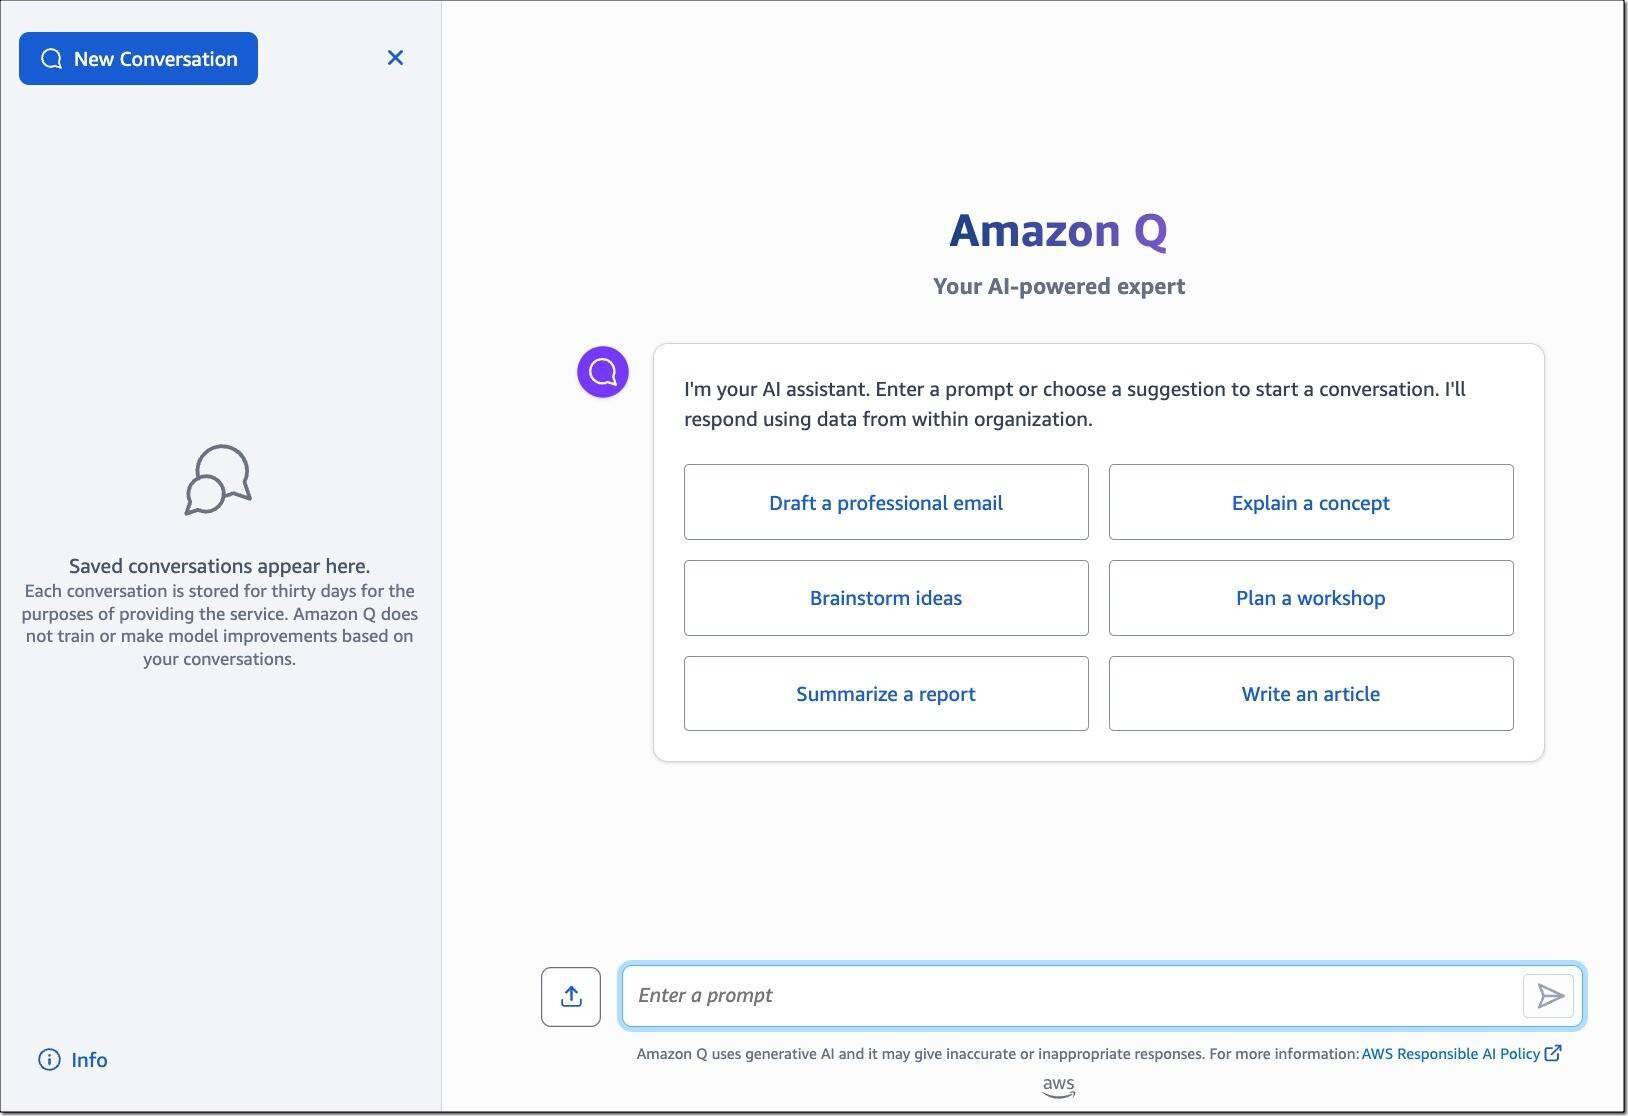 亚马逊 AWS 推出 AI 聊天机器人 Amazon Q 为企业提供服务 